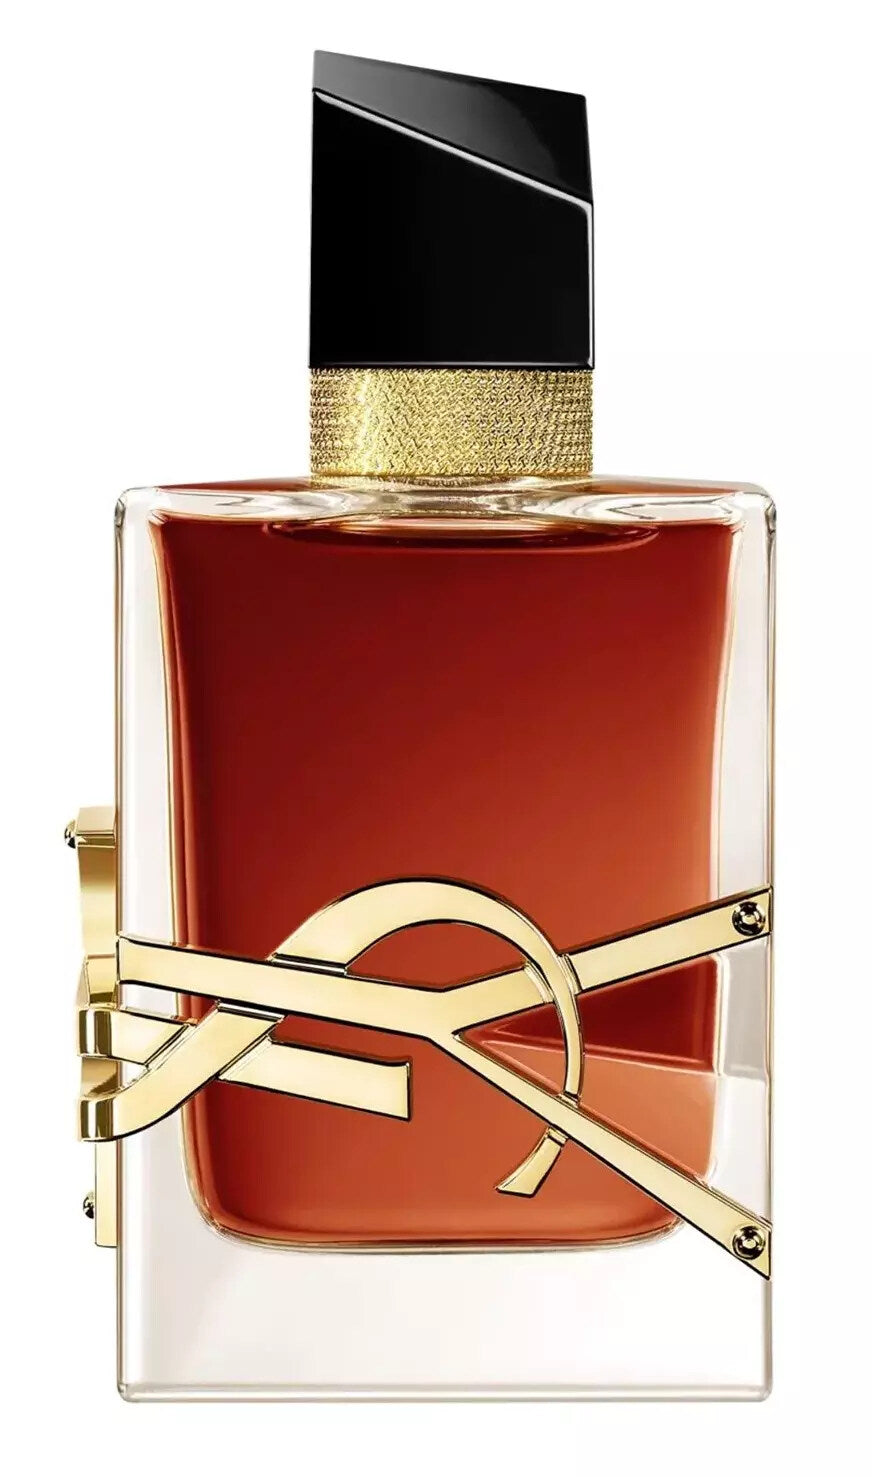 Libre Le Parfum By Yves Saint Laurent